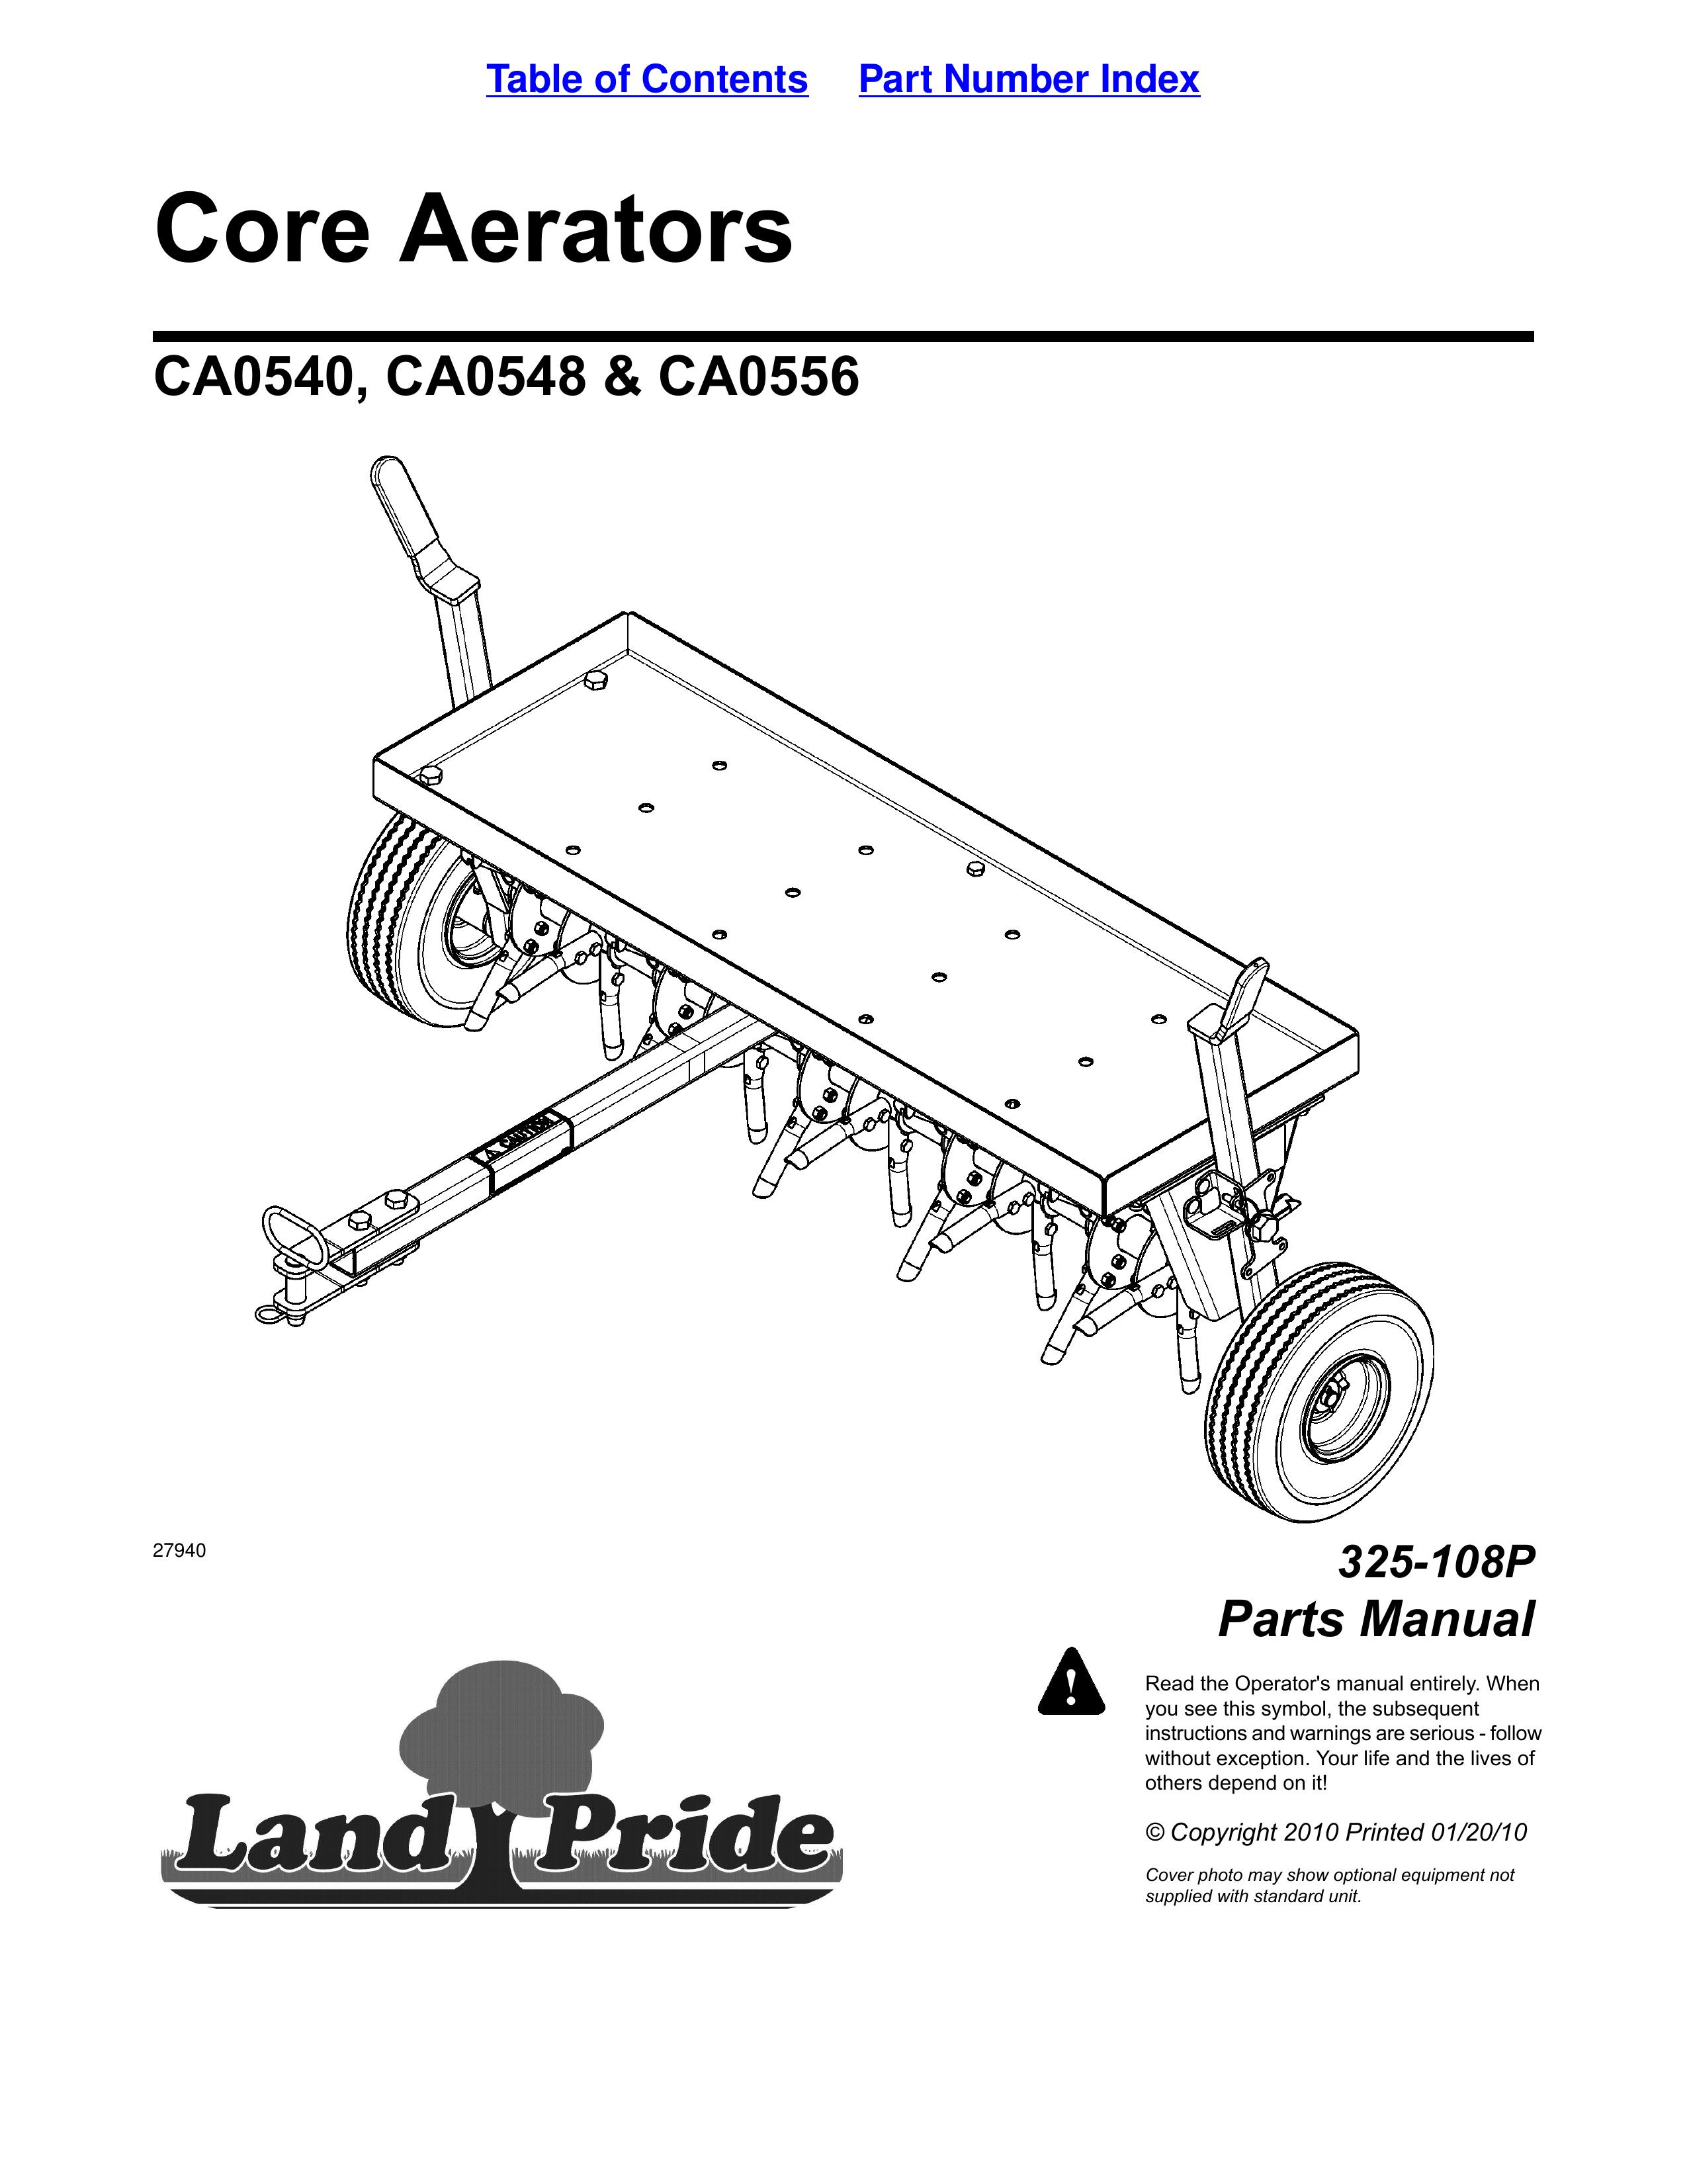 Land Pride CA0540 Lawn Aerator User Manual